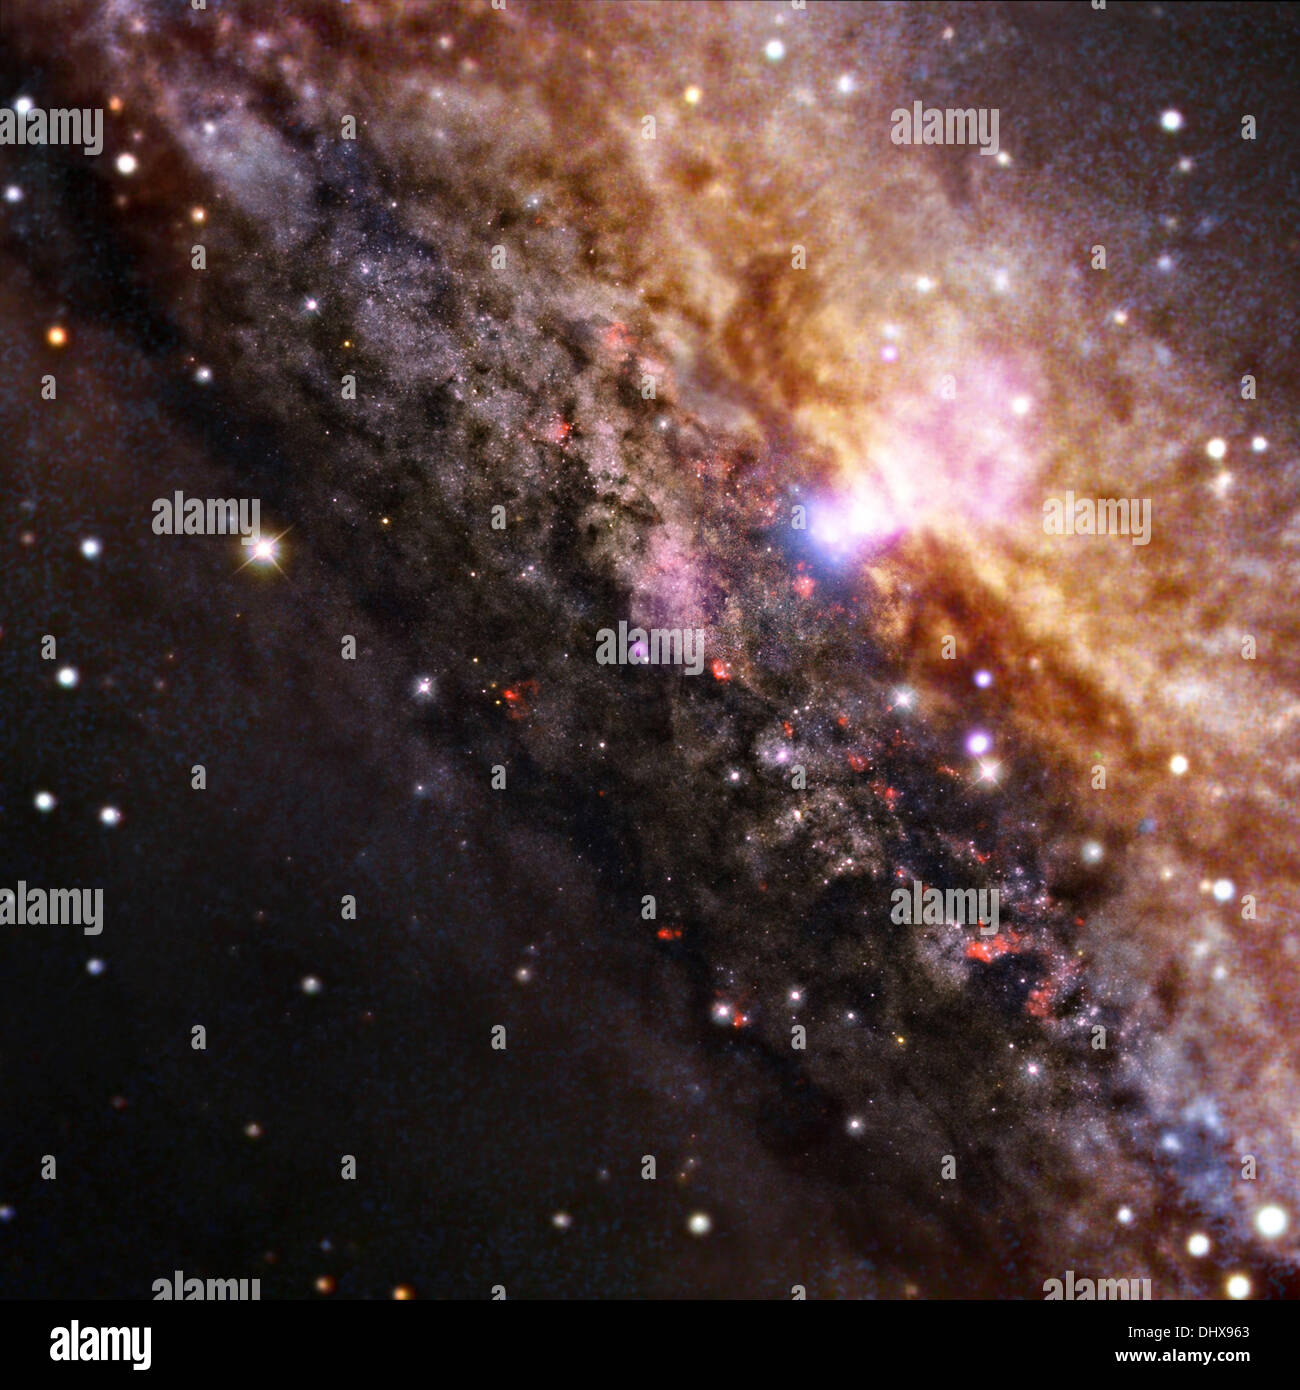 Chandra space telescope vista di una regione centrale di una galassia che è simile in apparenza generale alla nostra Via Lattea, ma contiene un molto più attiva supermassive black hole entro la zona bianca vicino alla parte superiore. Questa galassia, noto come NGC 4945, è solo circa 13 milioni di anni luce dalla Terra e viene visto da bordo a rivelare la presenza del buco nero supermassiccio al centro di questa galassia Novembre 15, 2013. Foto Stock